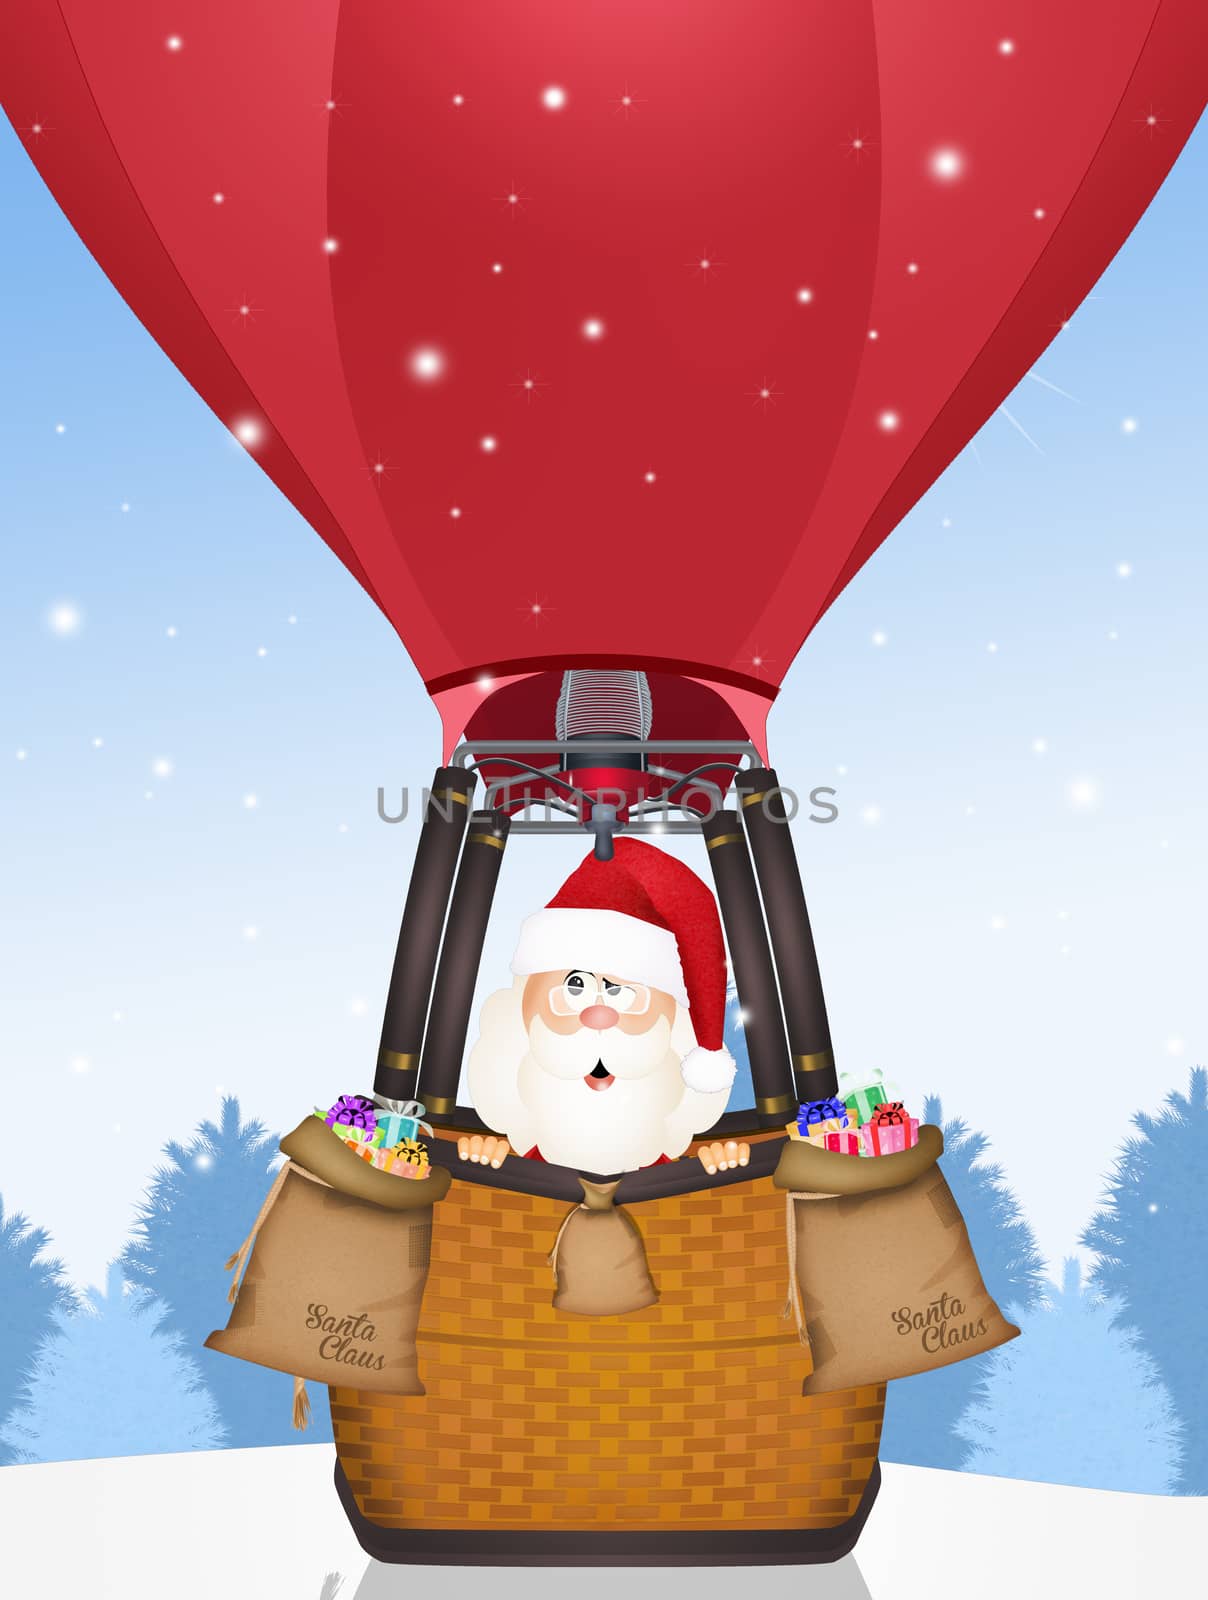 Santa Claus on hot air balloon by adrenalina